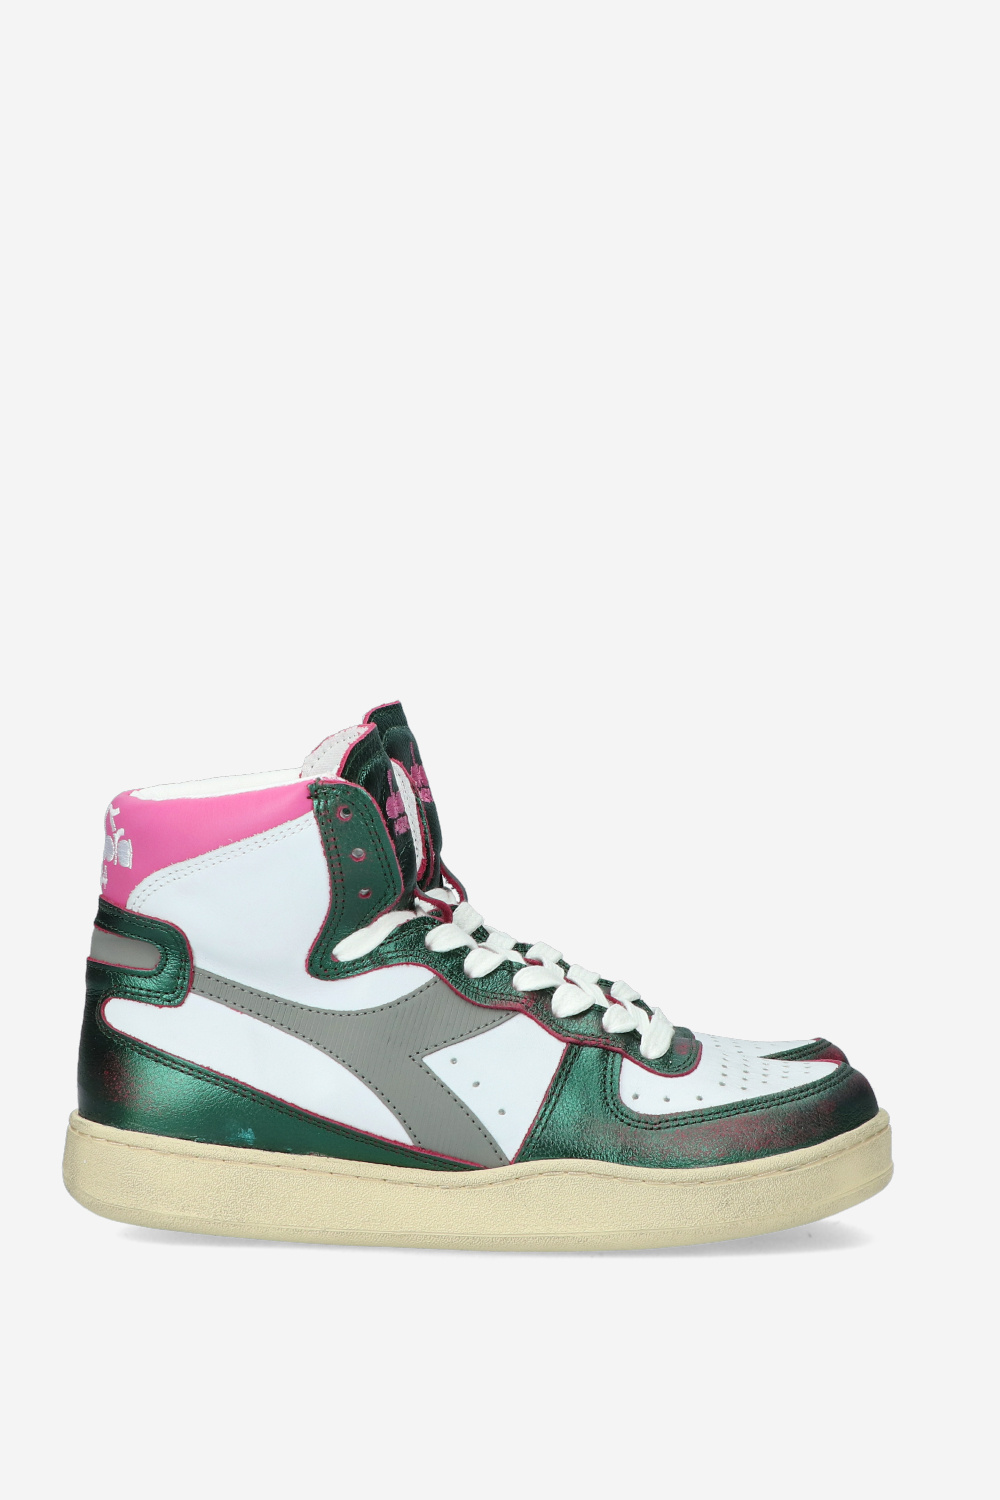 Diadora Sneaker Groen